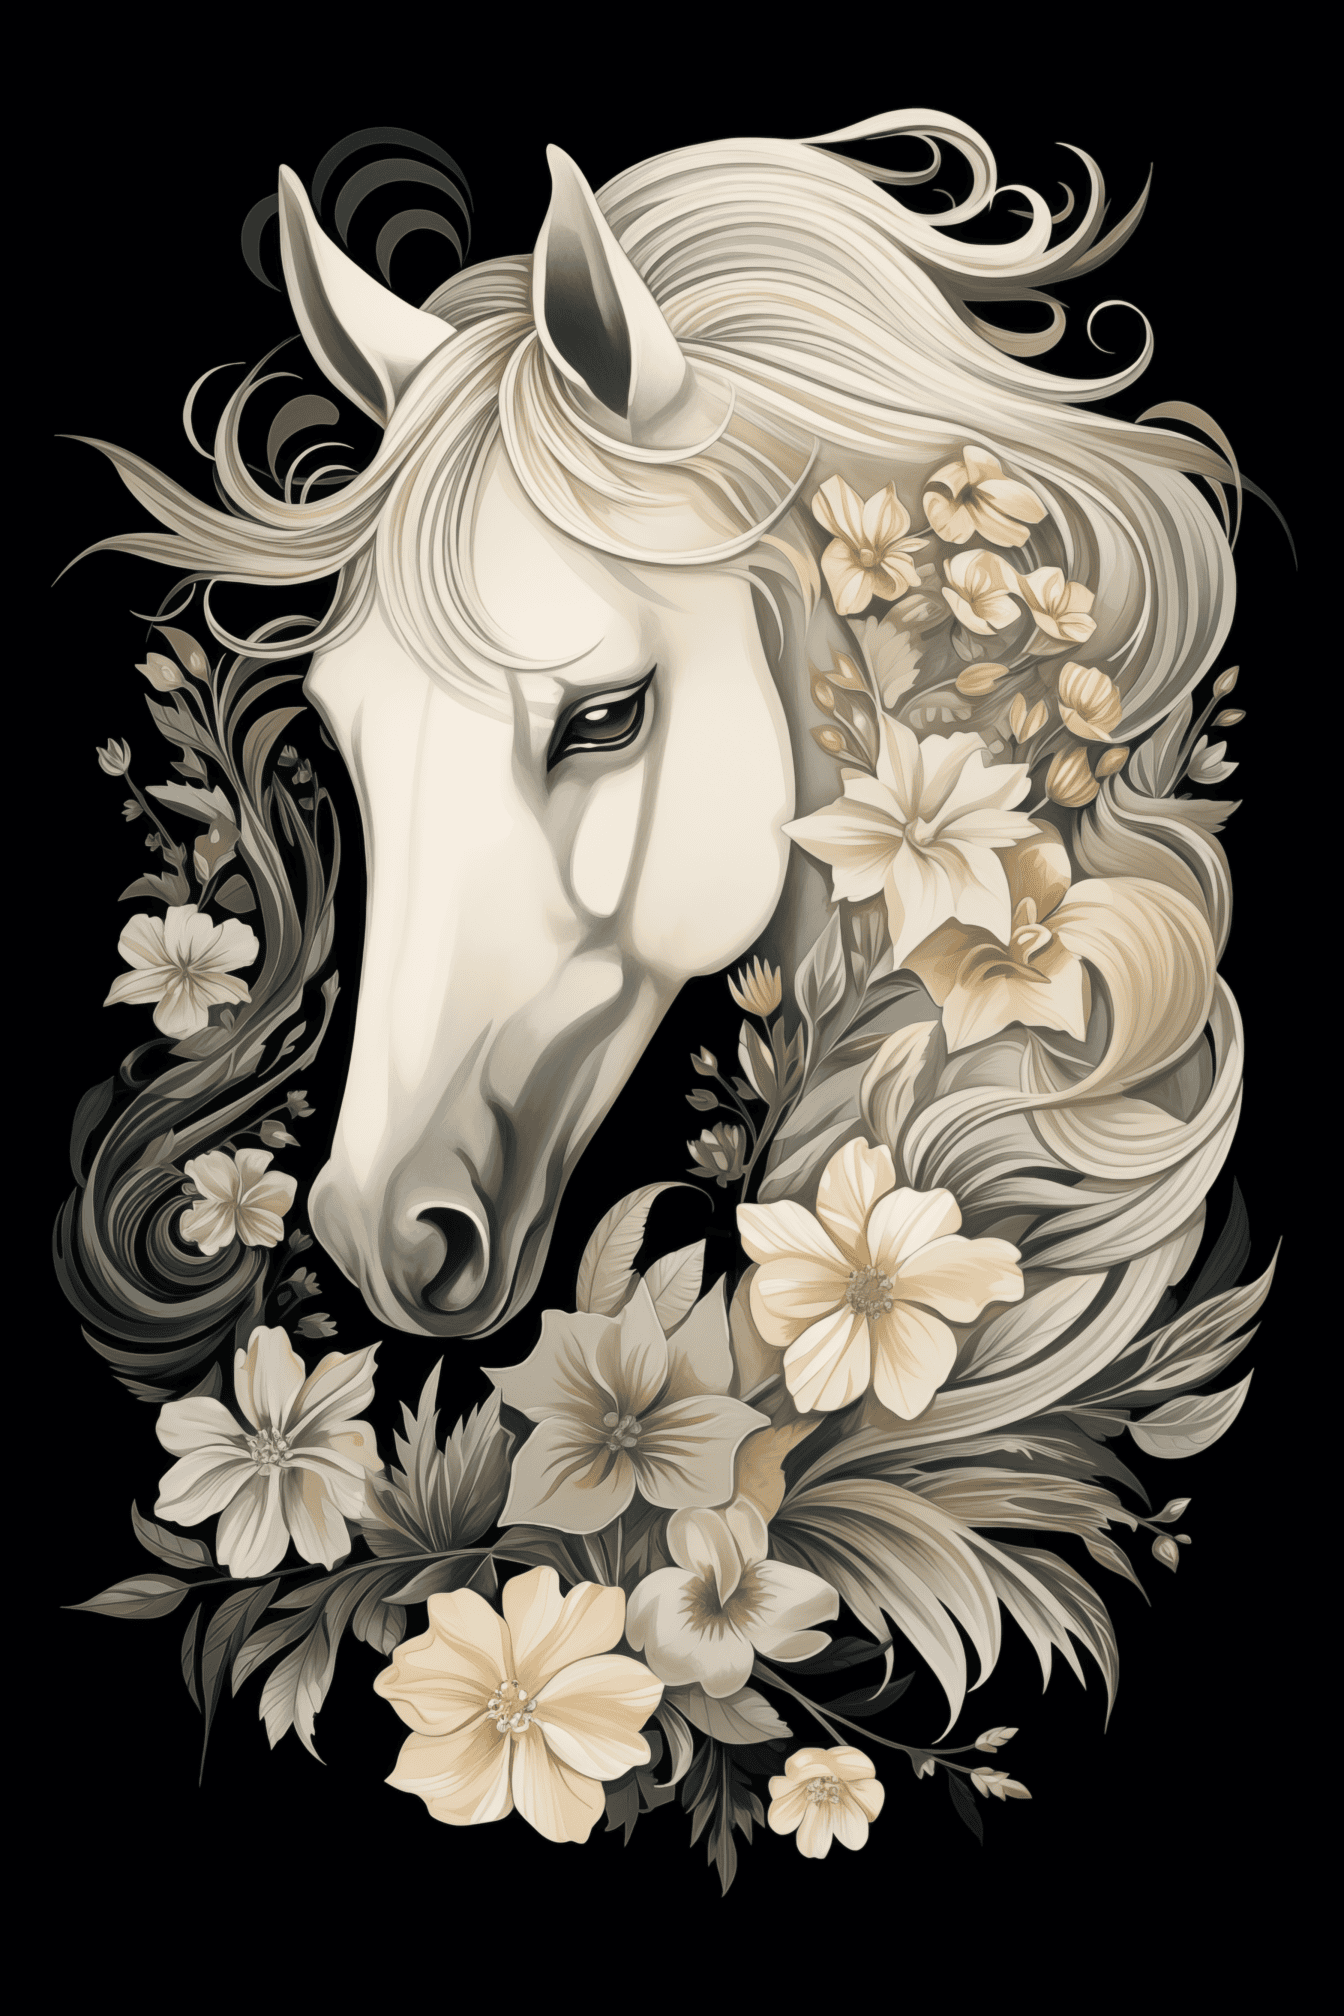 Ασπρόμαυρη απεικόνιση κεφαλής λευκού αλόγου με διακοσμήσεις λουλουδιών